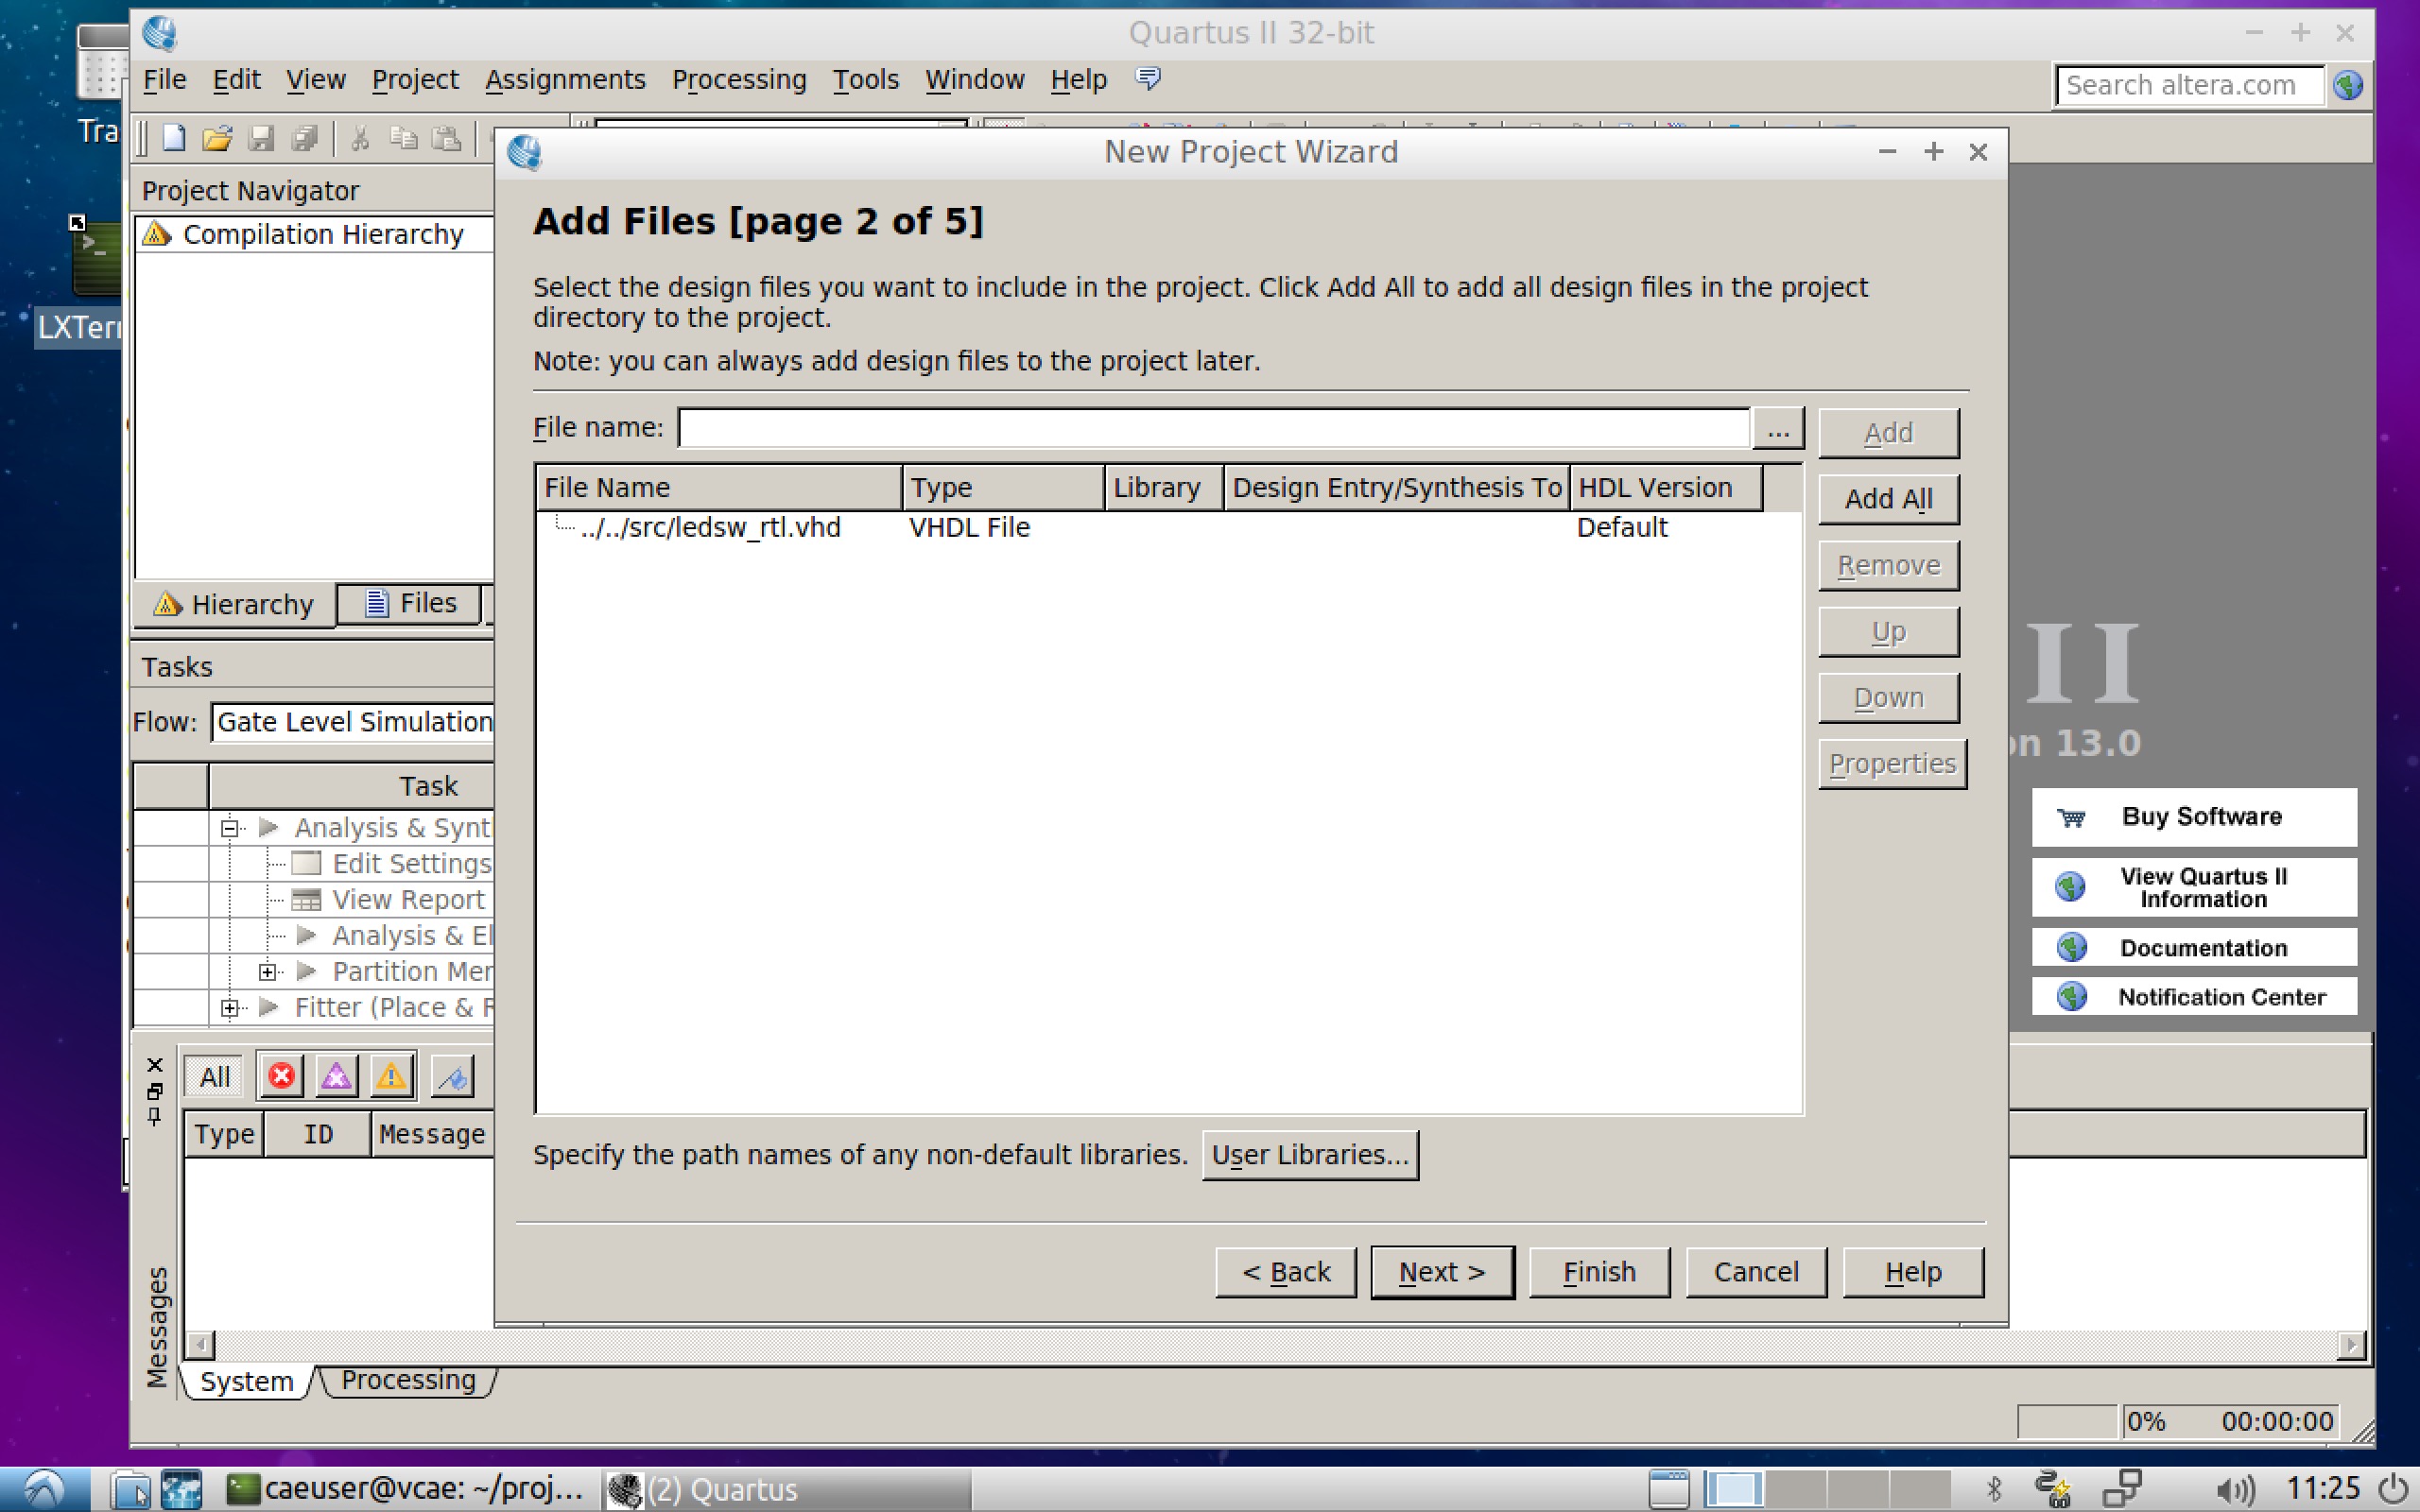  Quartus VHDL Datei hinzufügen